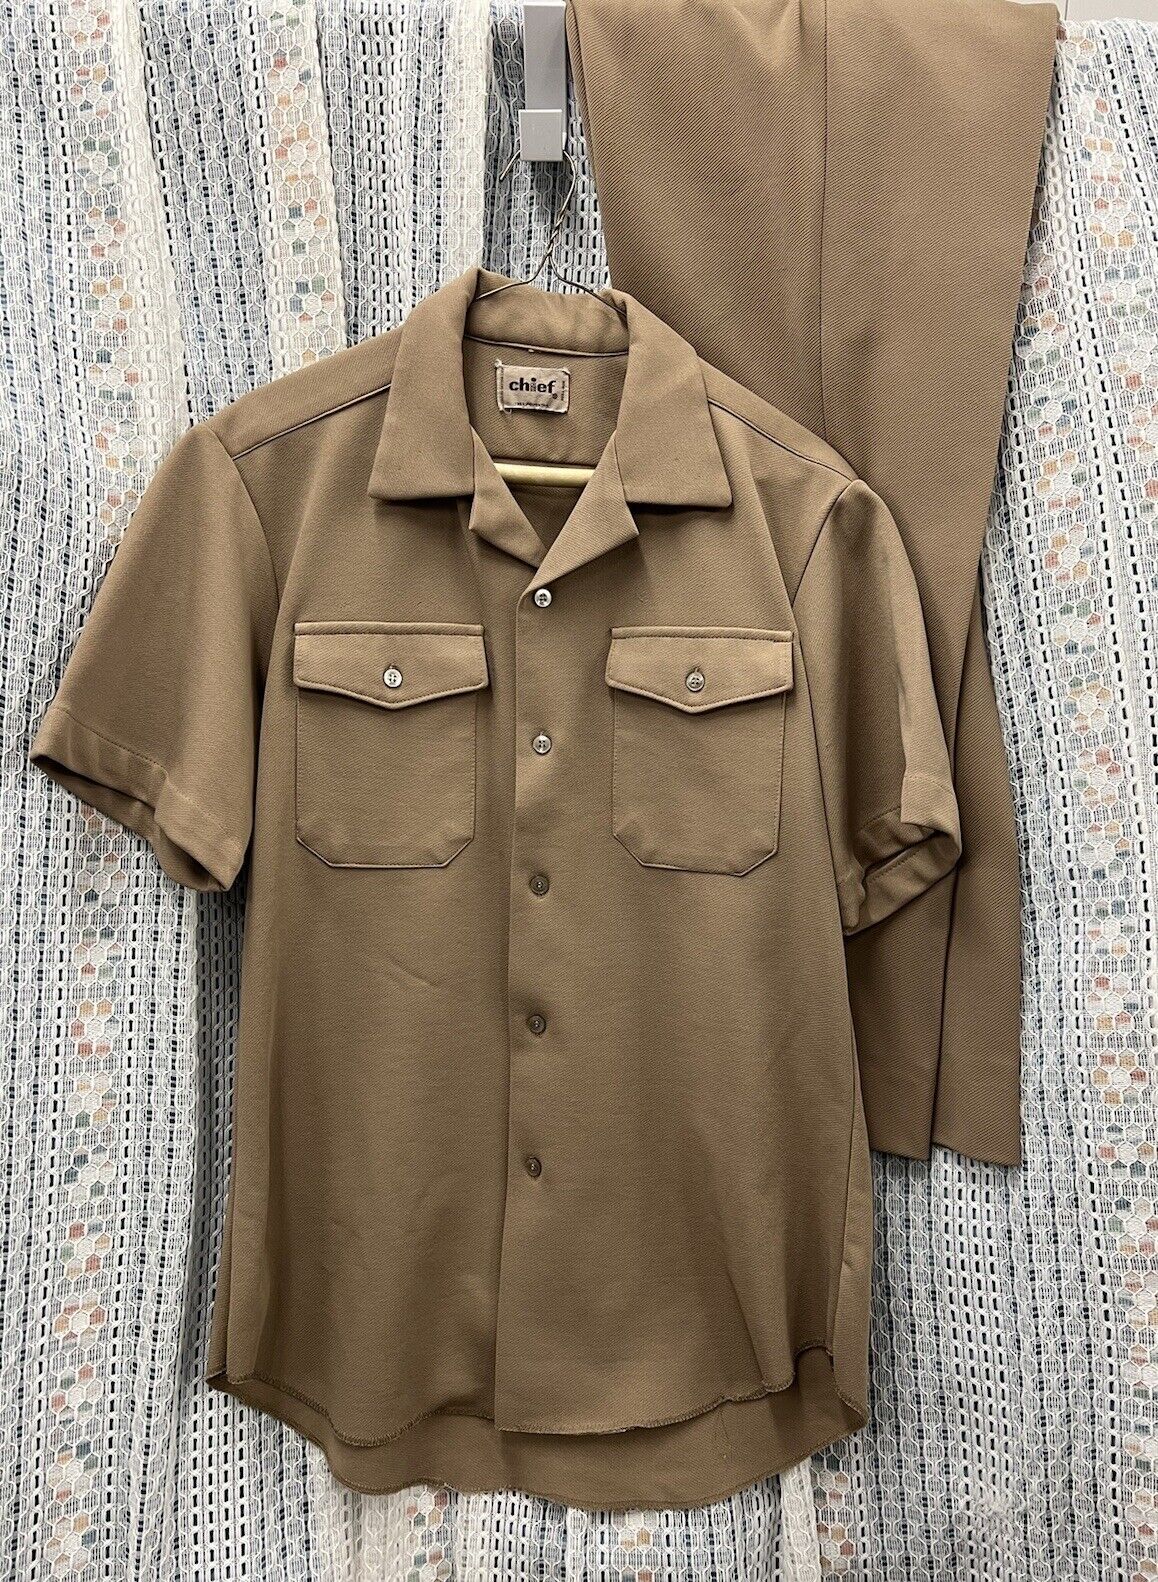 VTG Vietnam Era US Army Polyester Khaki Short Sleeve Shirt Pants Uniform Texture